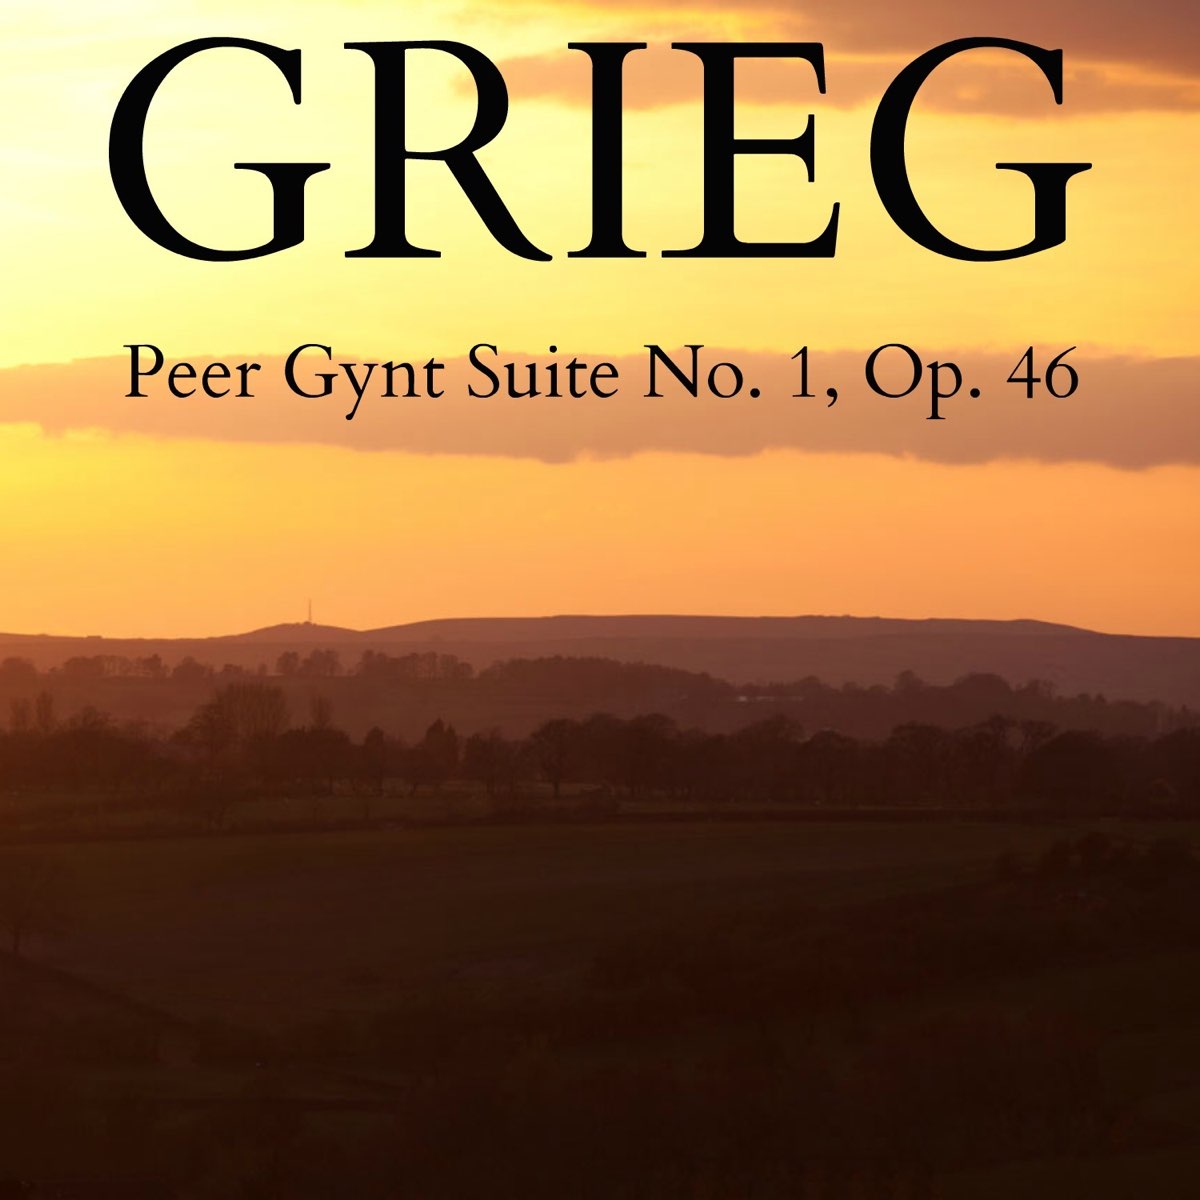 Peer gynt in the hall. Grieg: peer Gynt Suite no. 1, "in the Hall of the Mountain King". Peer Gynt Suite. Peer Gynt Suite no. 1, op. 46. Peer Gynt Suite no. 1, op. 46: IV. In the Hall of the Mountain King.